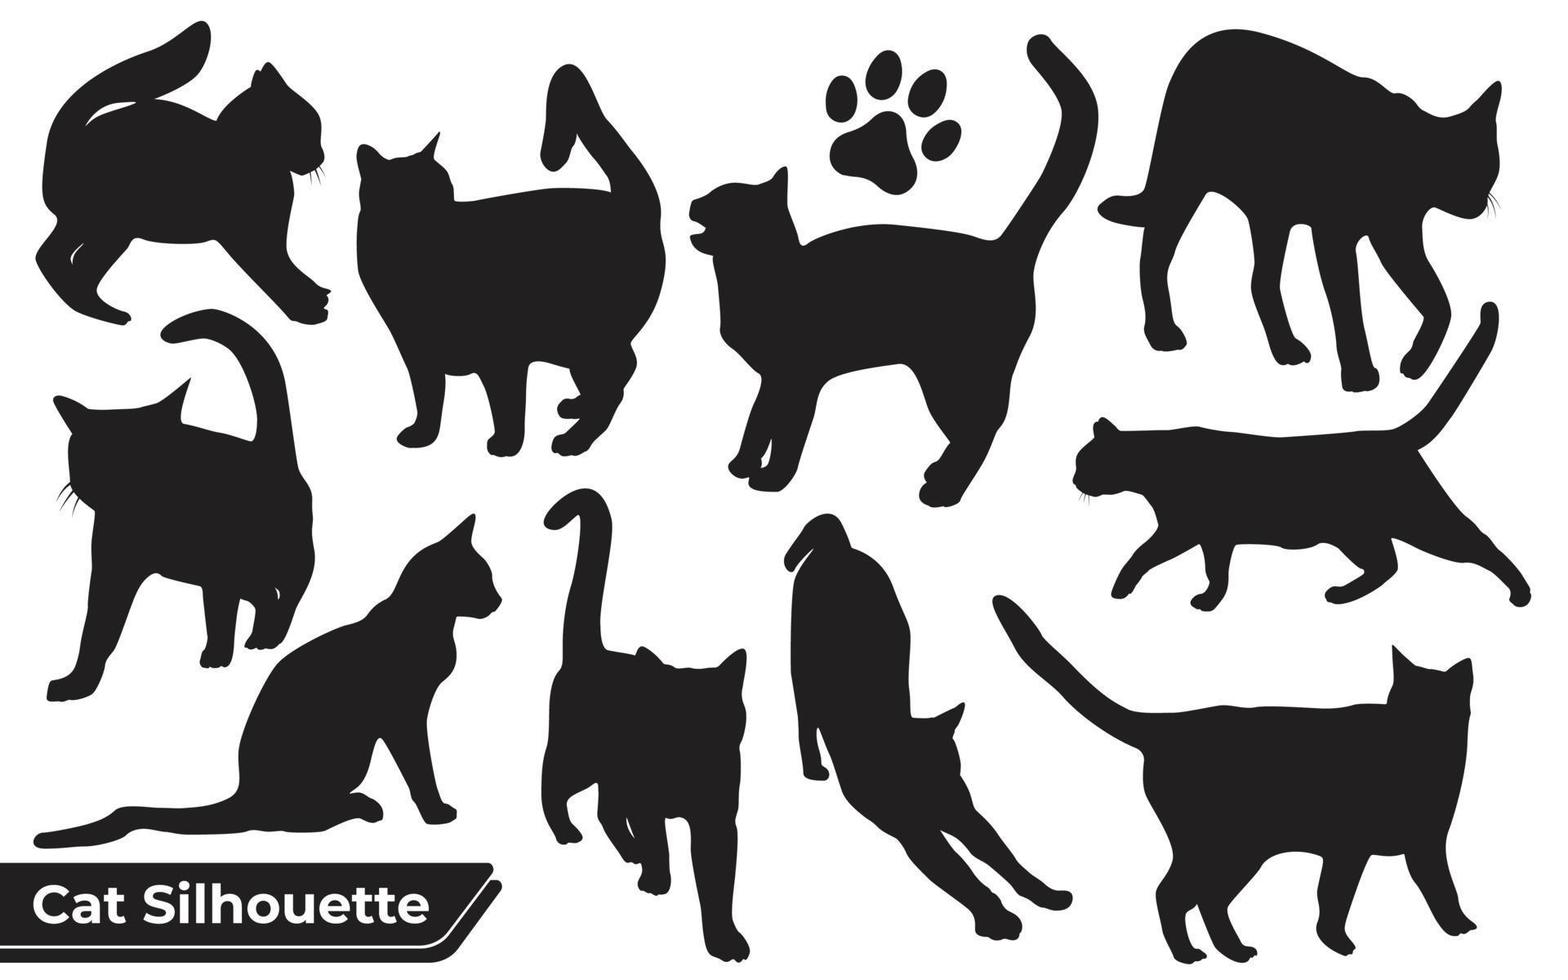 Sammlung von Katzensilhouette in verschiedenen Positionen vektor